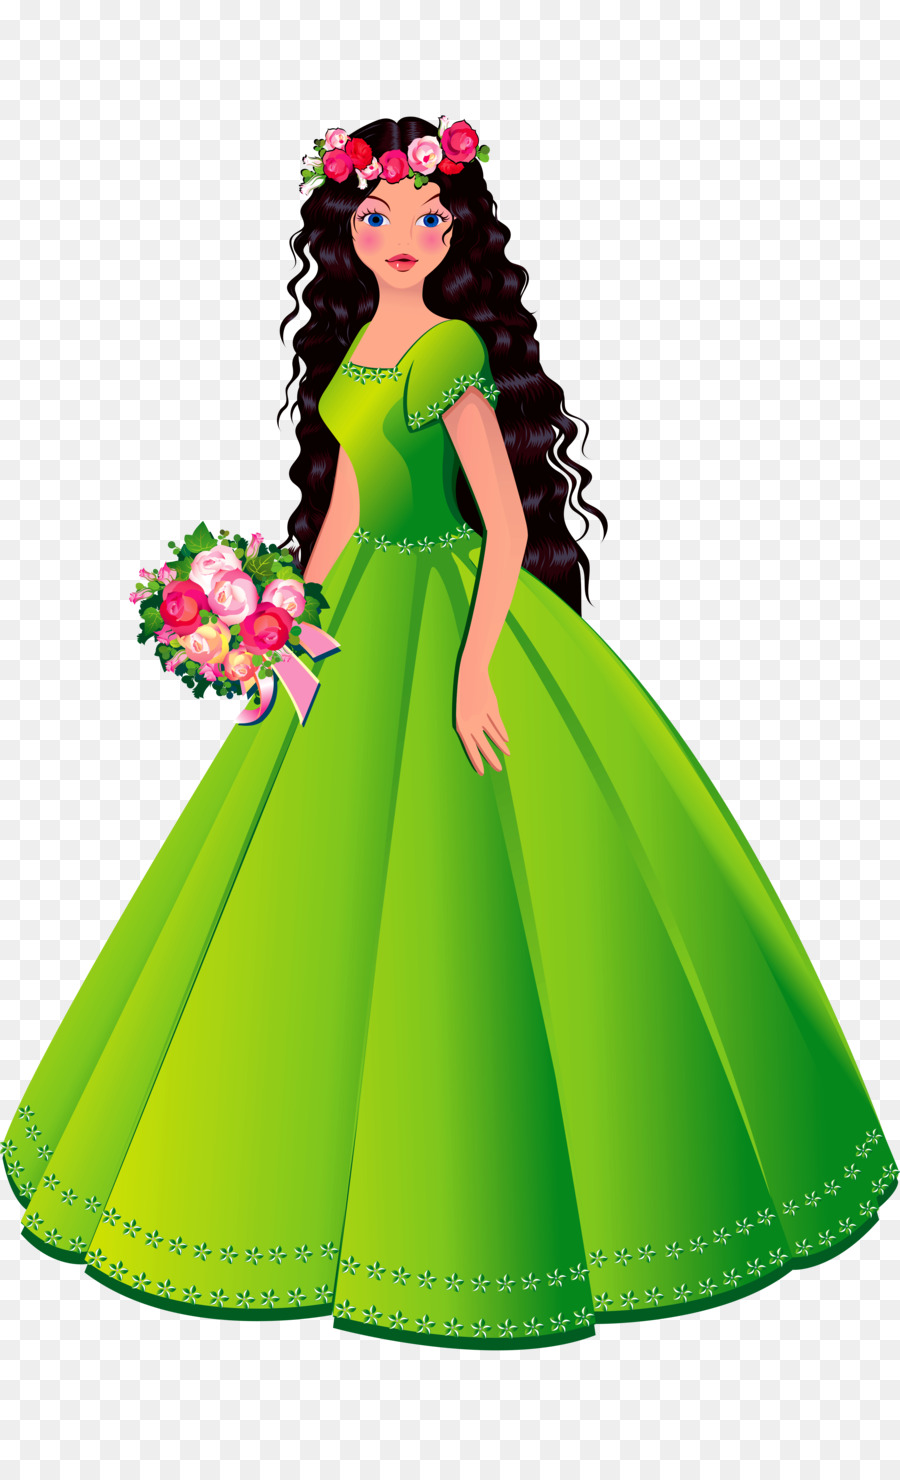 Cinderella Ariel Disney Princess Cartoon Clip art - dress png download - 3440*5604 - Free Transparent Cinderella png Download.